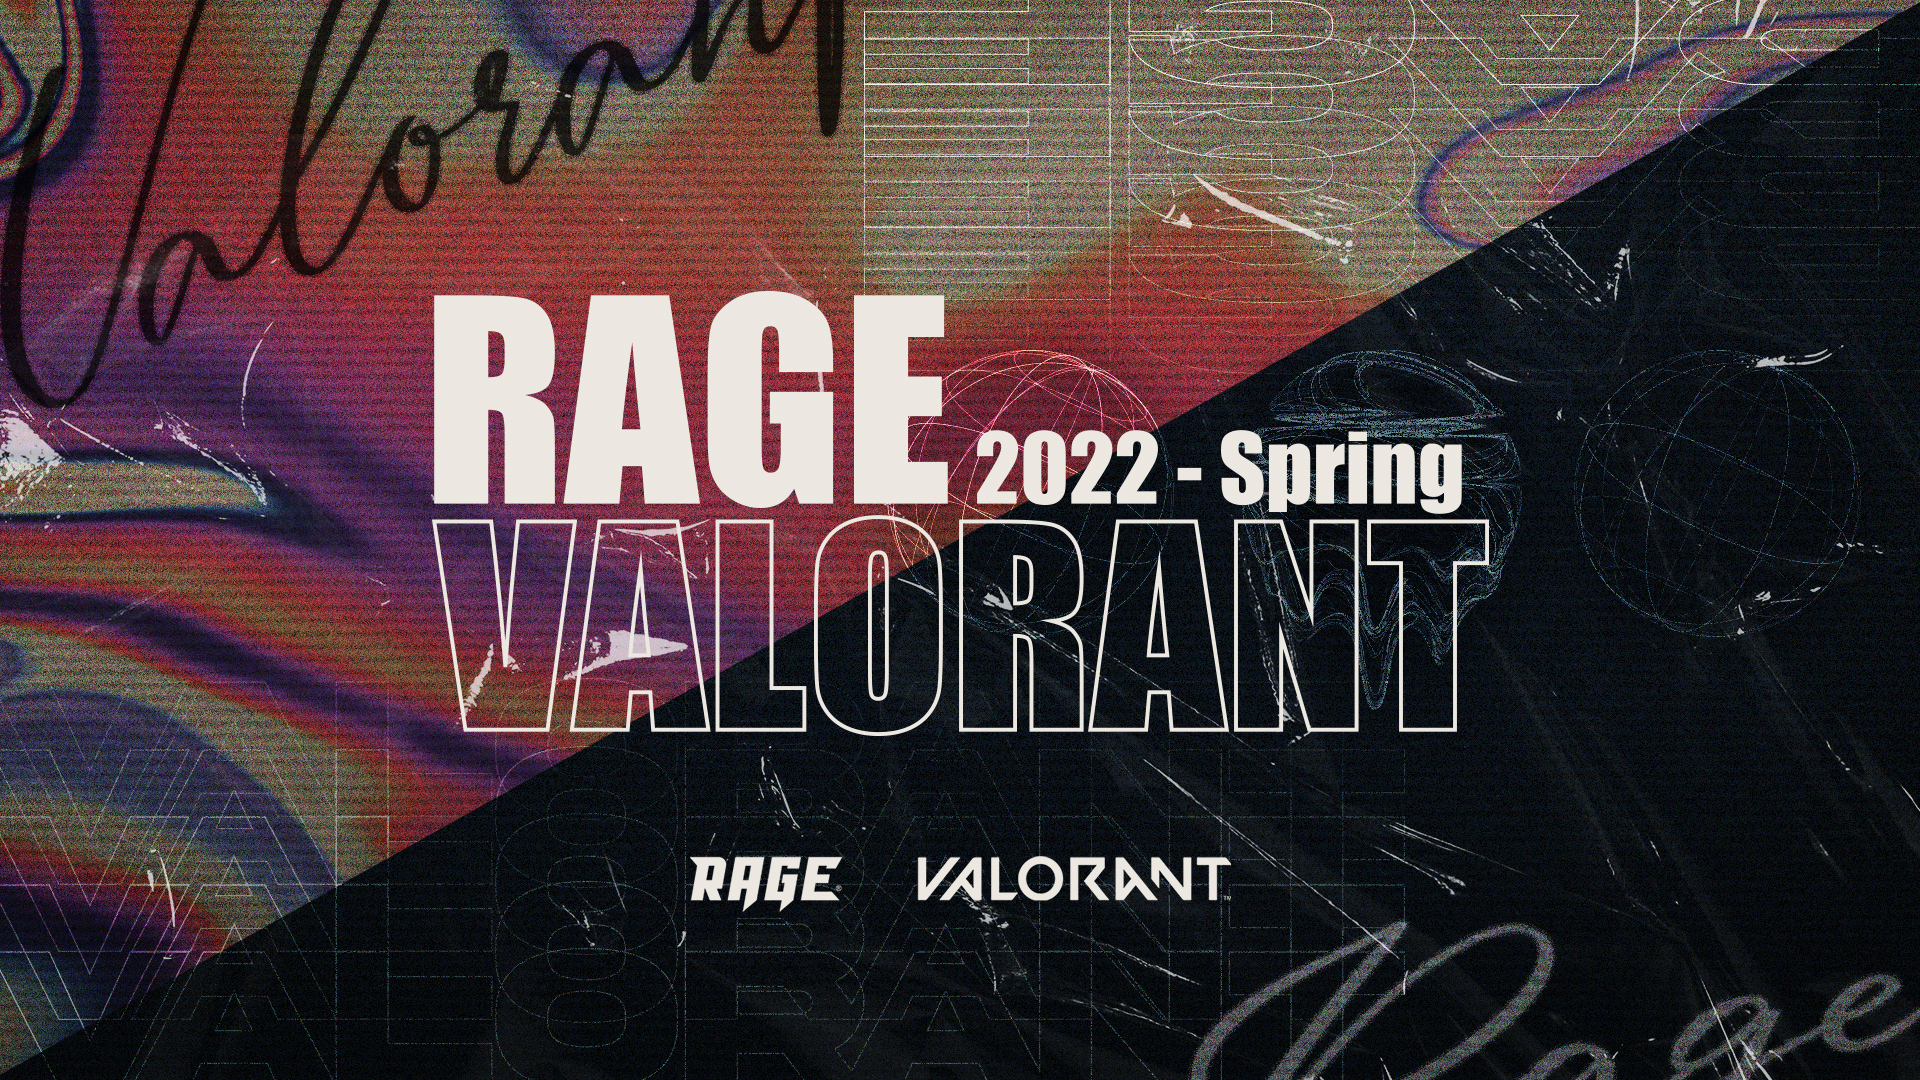 出演情報 – StylishNoob, k4sen, VALORANT部門が『RAGE VALORANT 2022 Spring』に出演